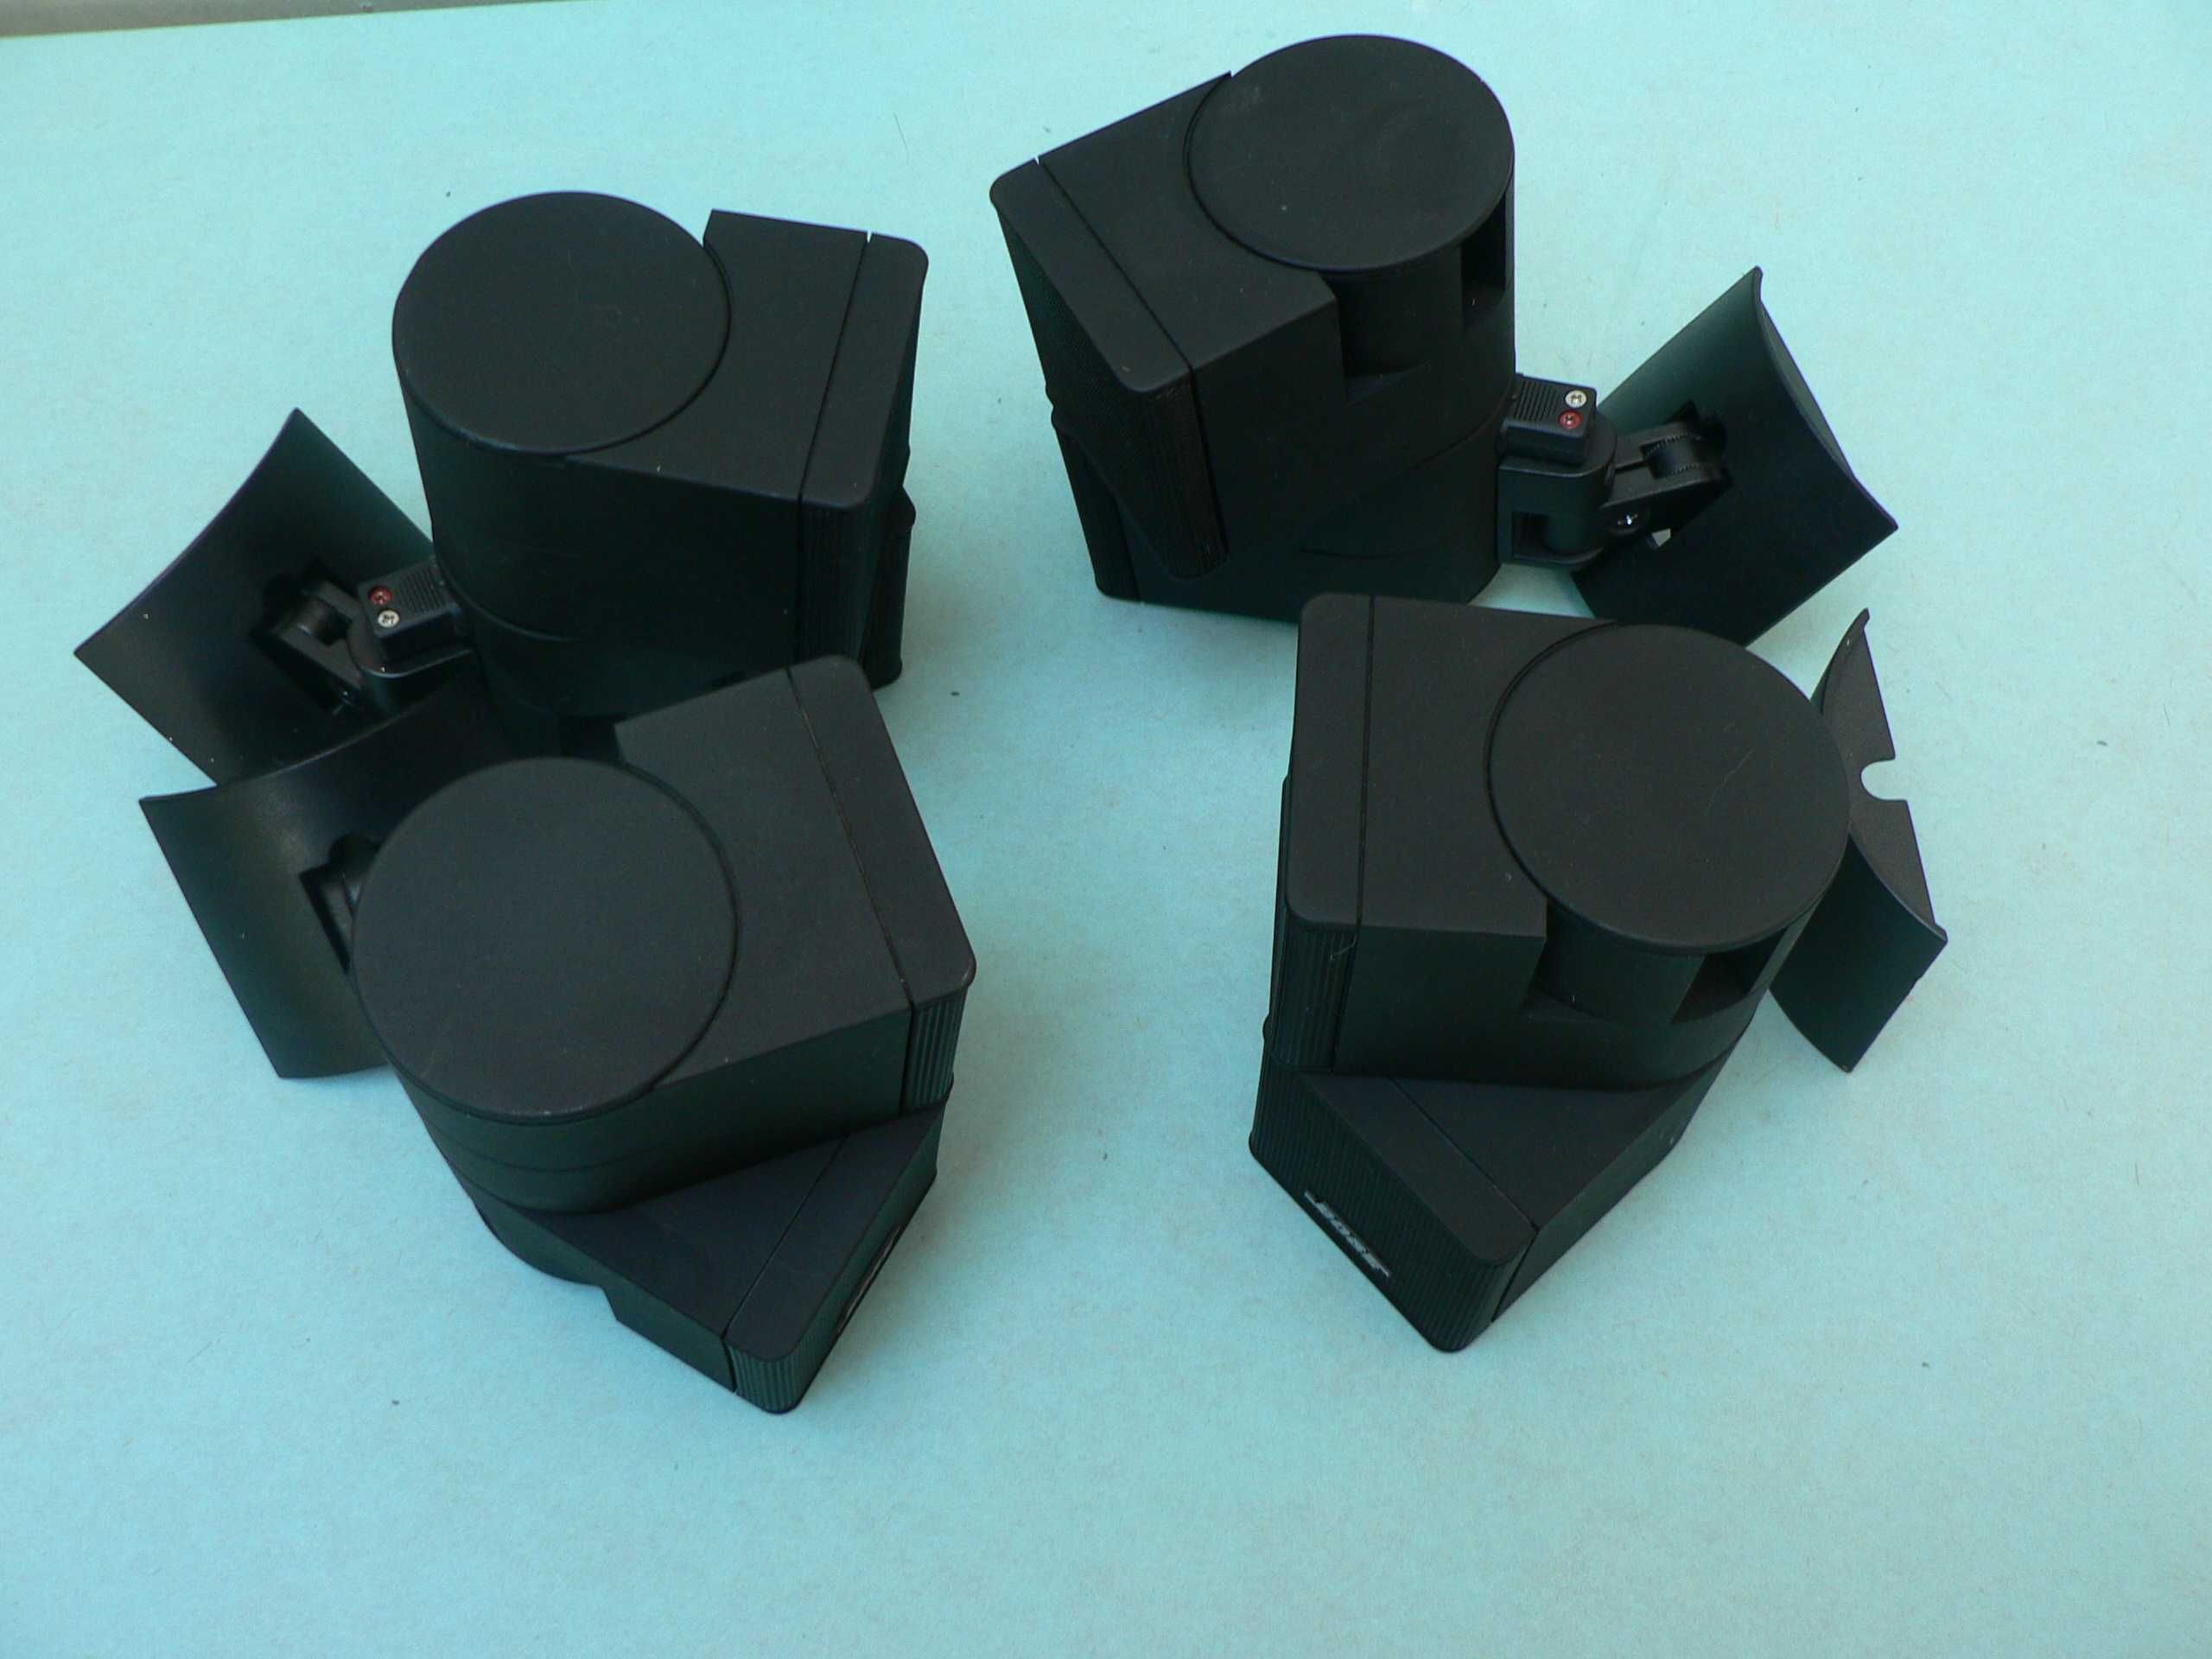 Kolumienki Bose Jewel Double Cube, uchwyty ,adaptery AC2 ,Okazja !